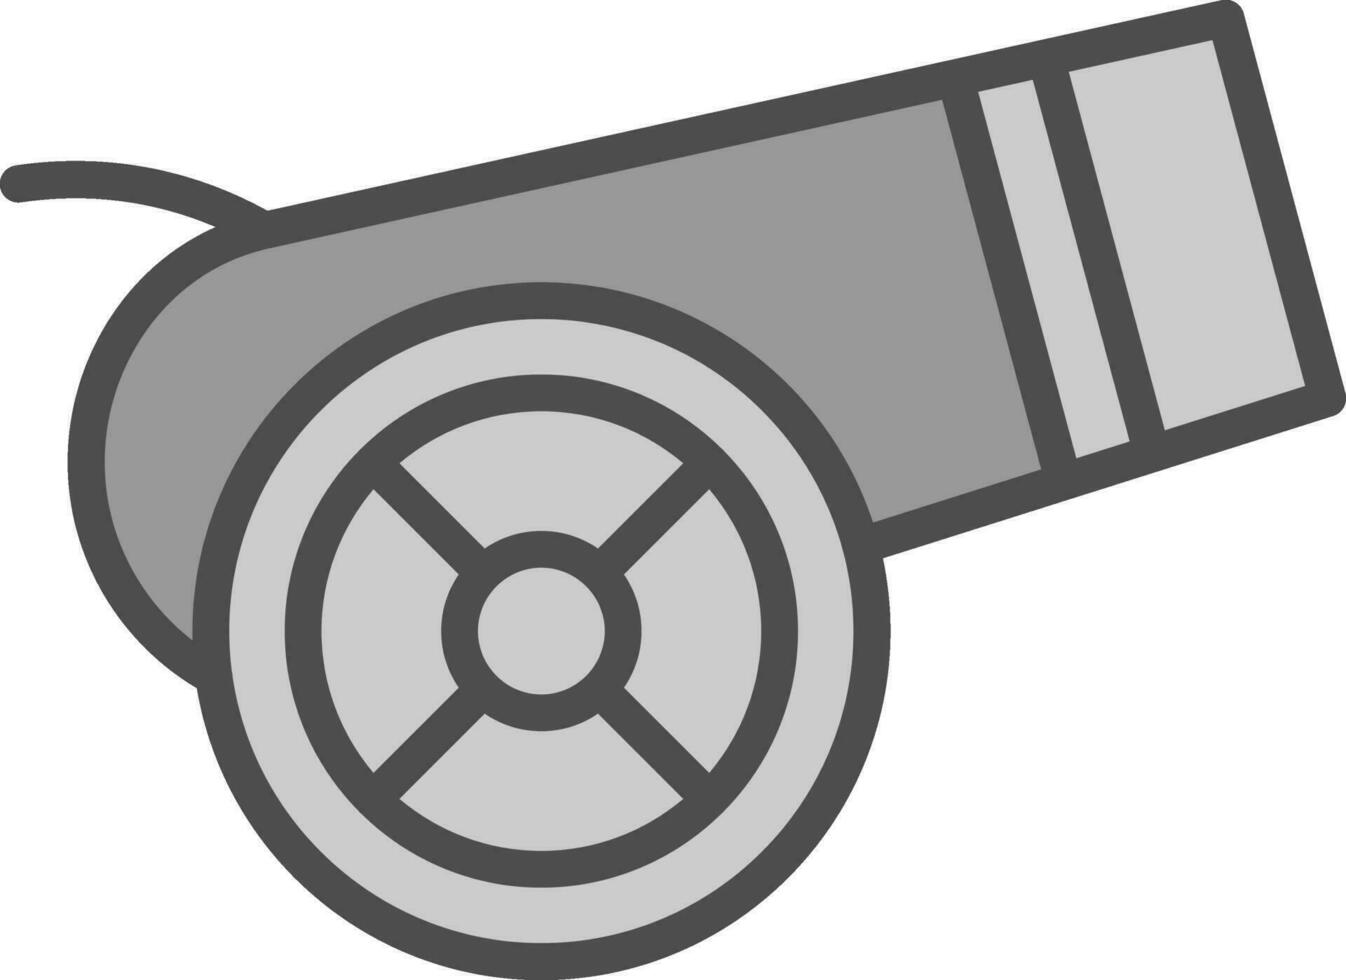 Cannon  Vector Icon Design